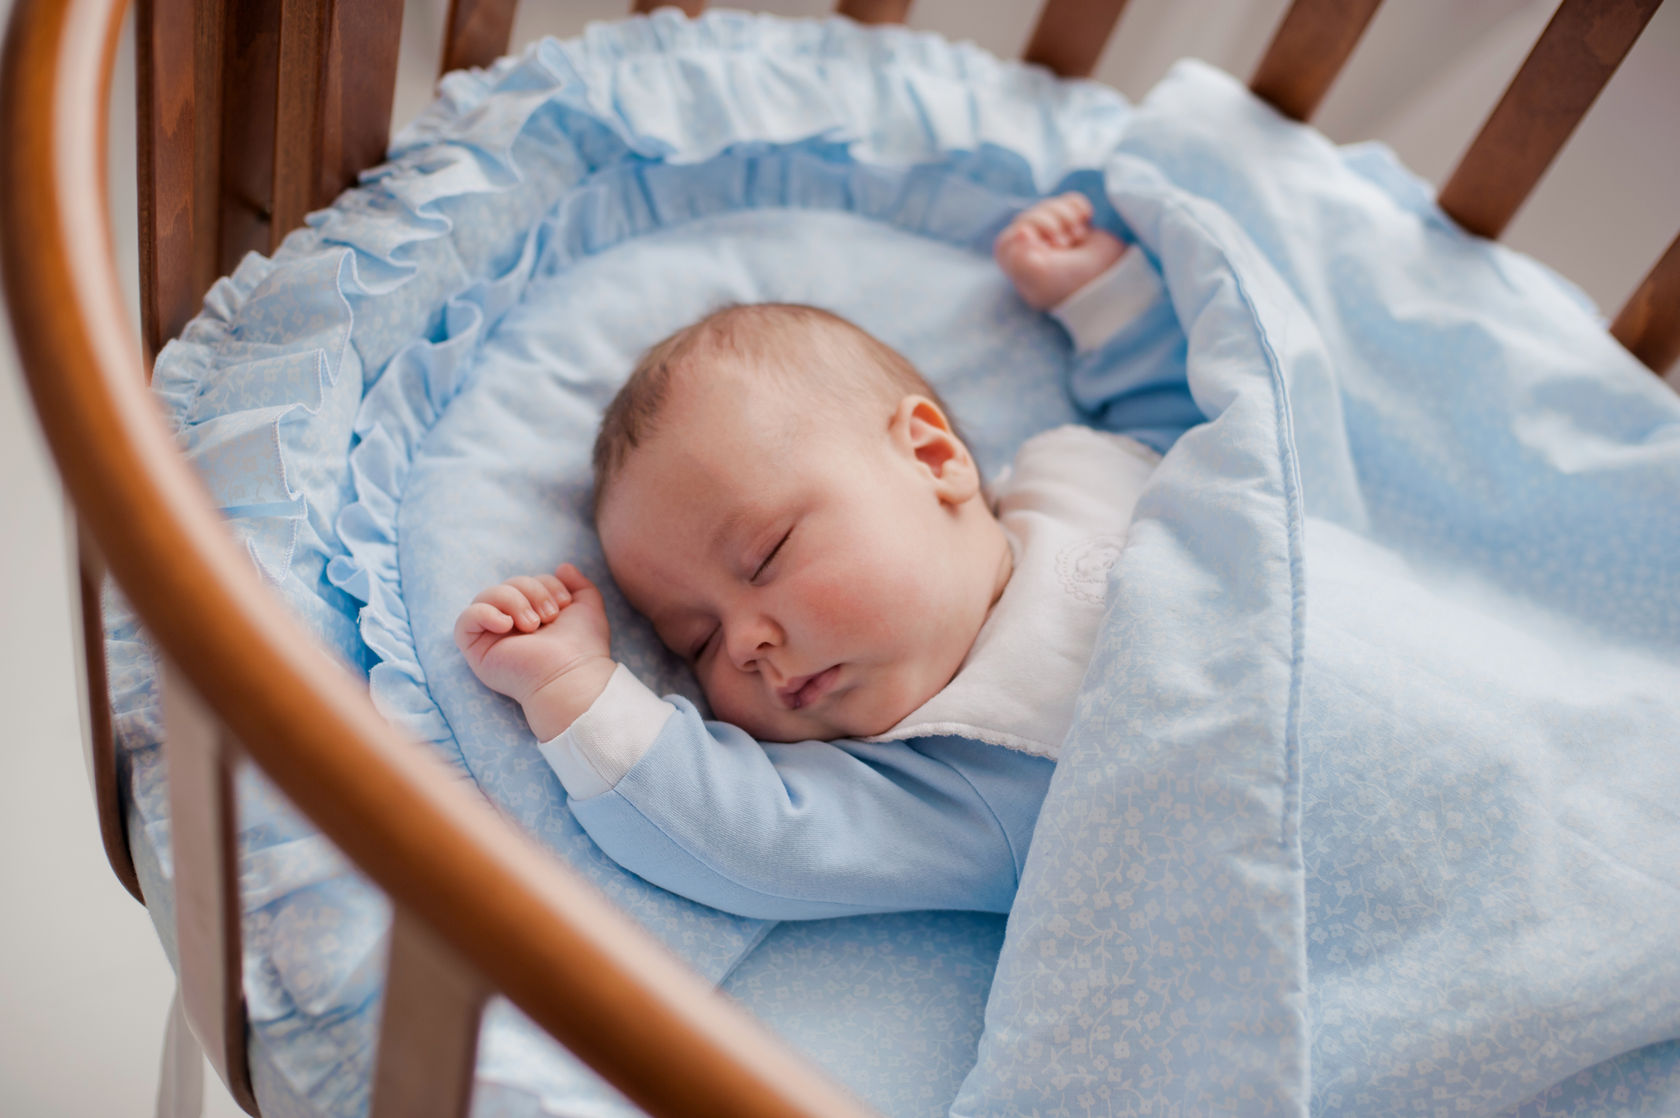 Rebyonok. Кроватка для новорожденного. Младенец в кроватке. Новорожденный ребенок в кроватке. Колыбель для детей.